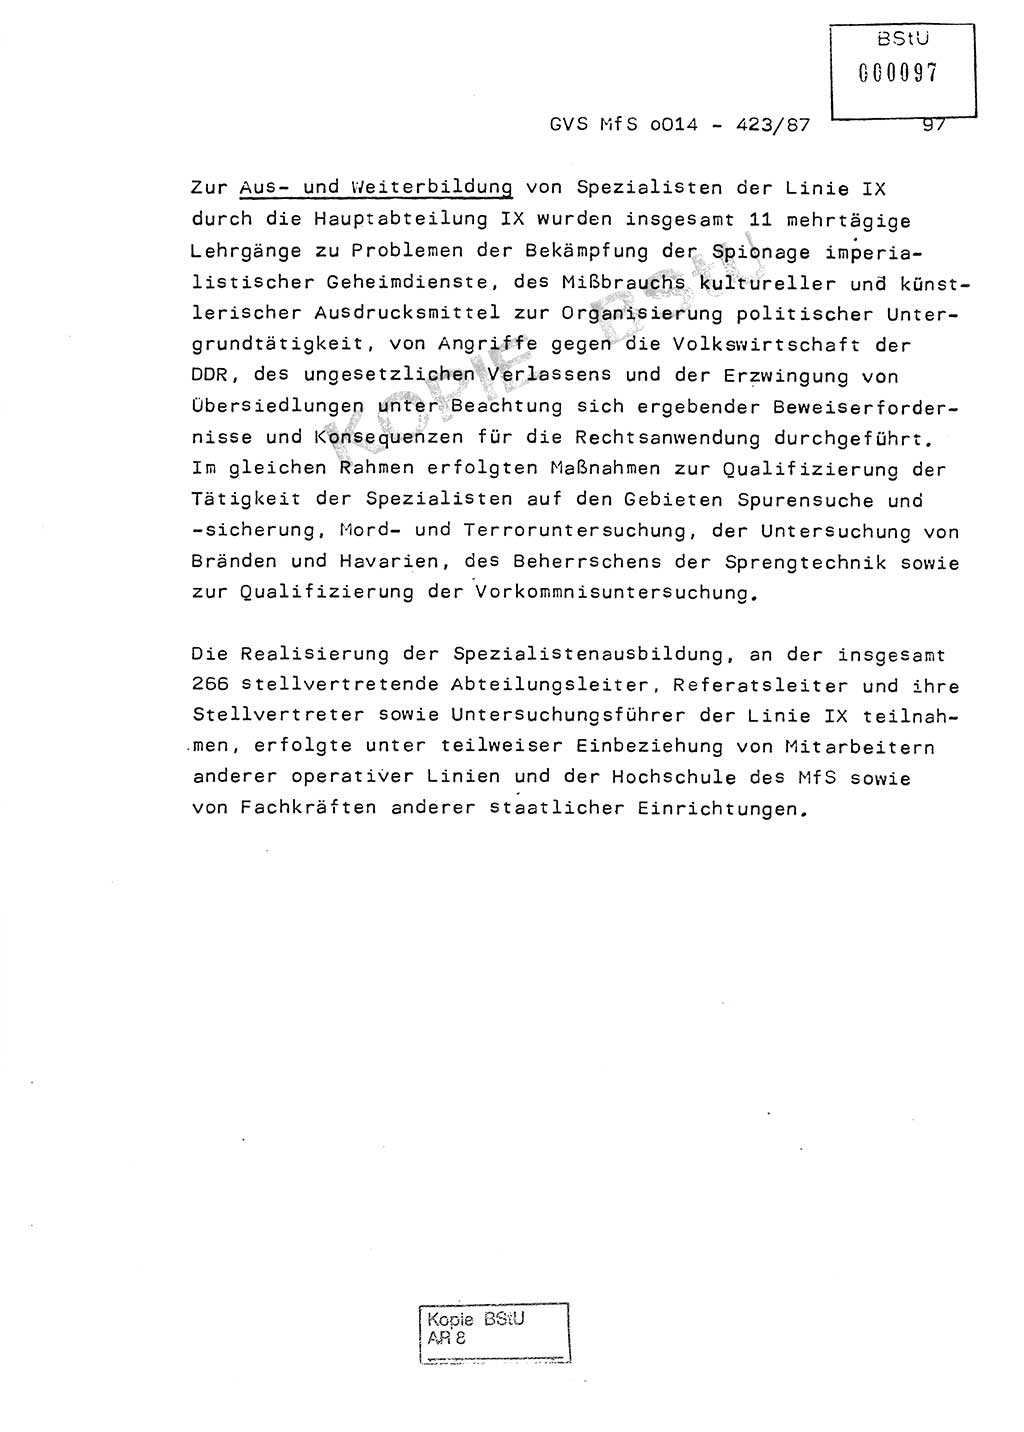 Jahresbericht der Hauptabteilung (HA) Ⅸ 1986, Einschätzung der Wirksamkeit der Untersuchungsarbeit im Jahre 1986, Ministerium für Staatssicherheit (MfS) der Deutschen Demokratischen Republik (DDR), Hauptabteilung Ⅸ, Geheime Verschlußsache (GVS) o014-423/87, Berlin 1987, Seite 97 (Einsch. MfS DDR HA Ⅸ GVS o014-423/87 1986, S. 97)